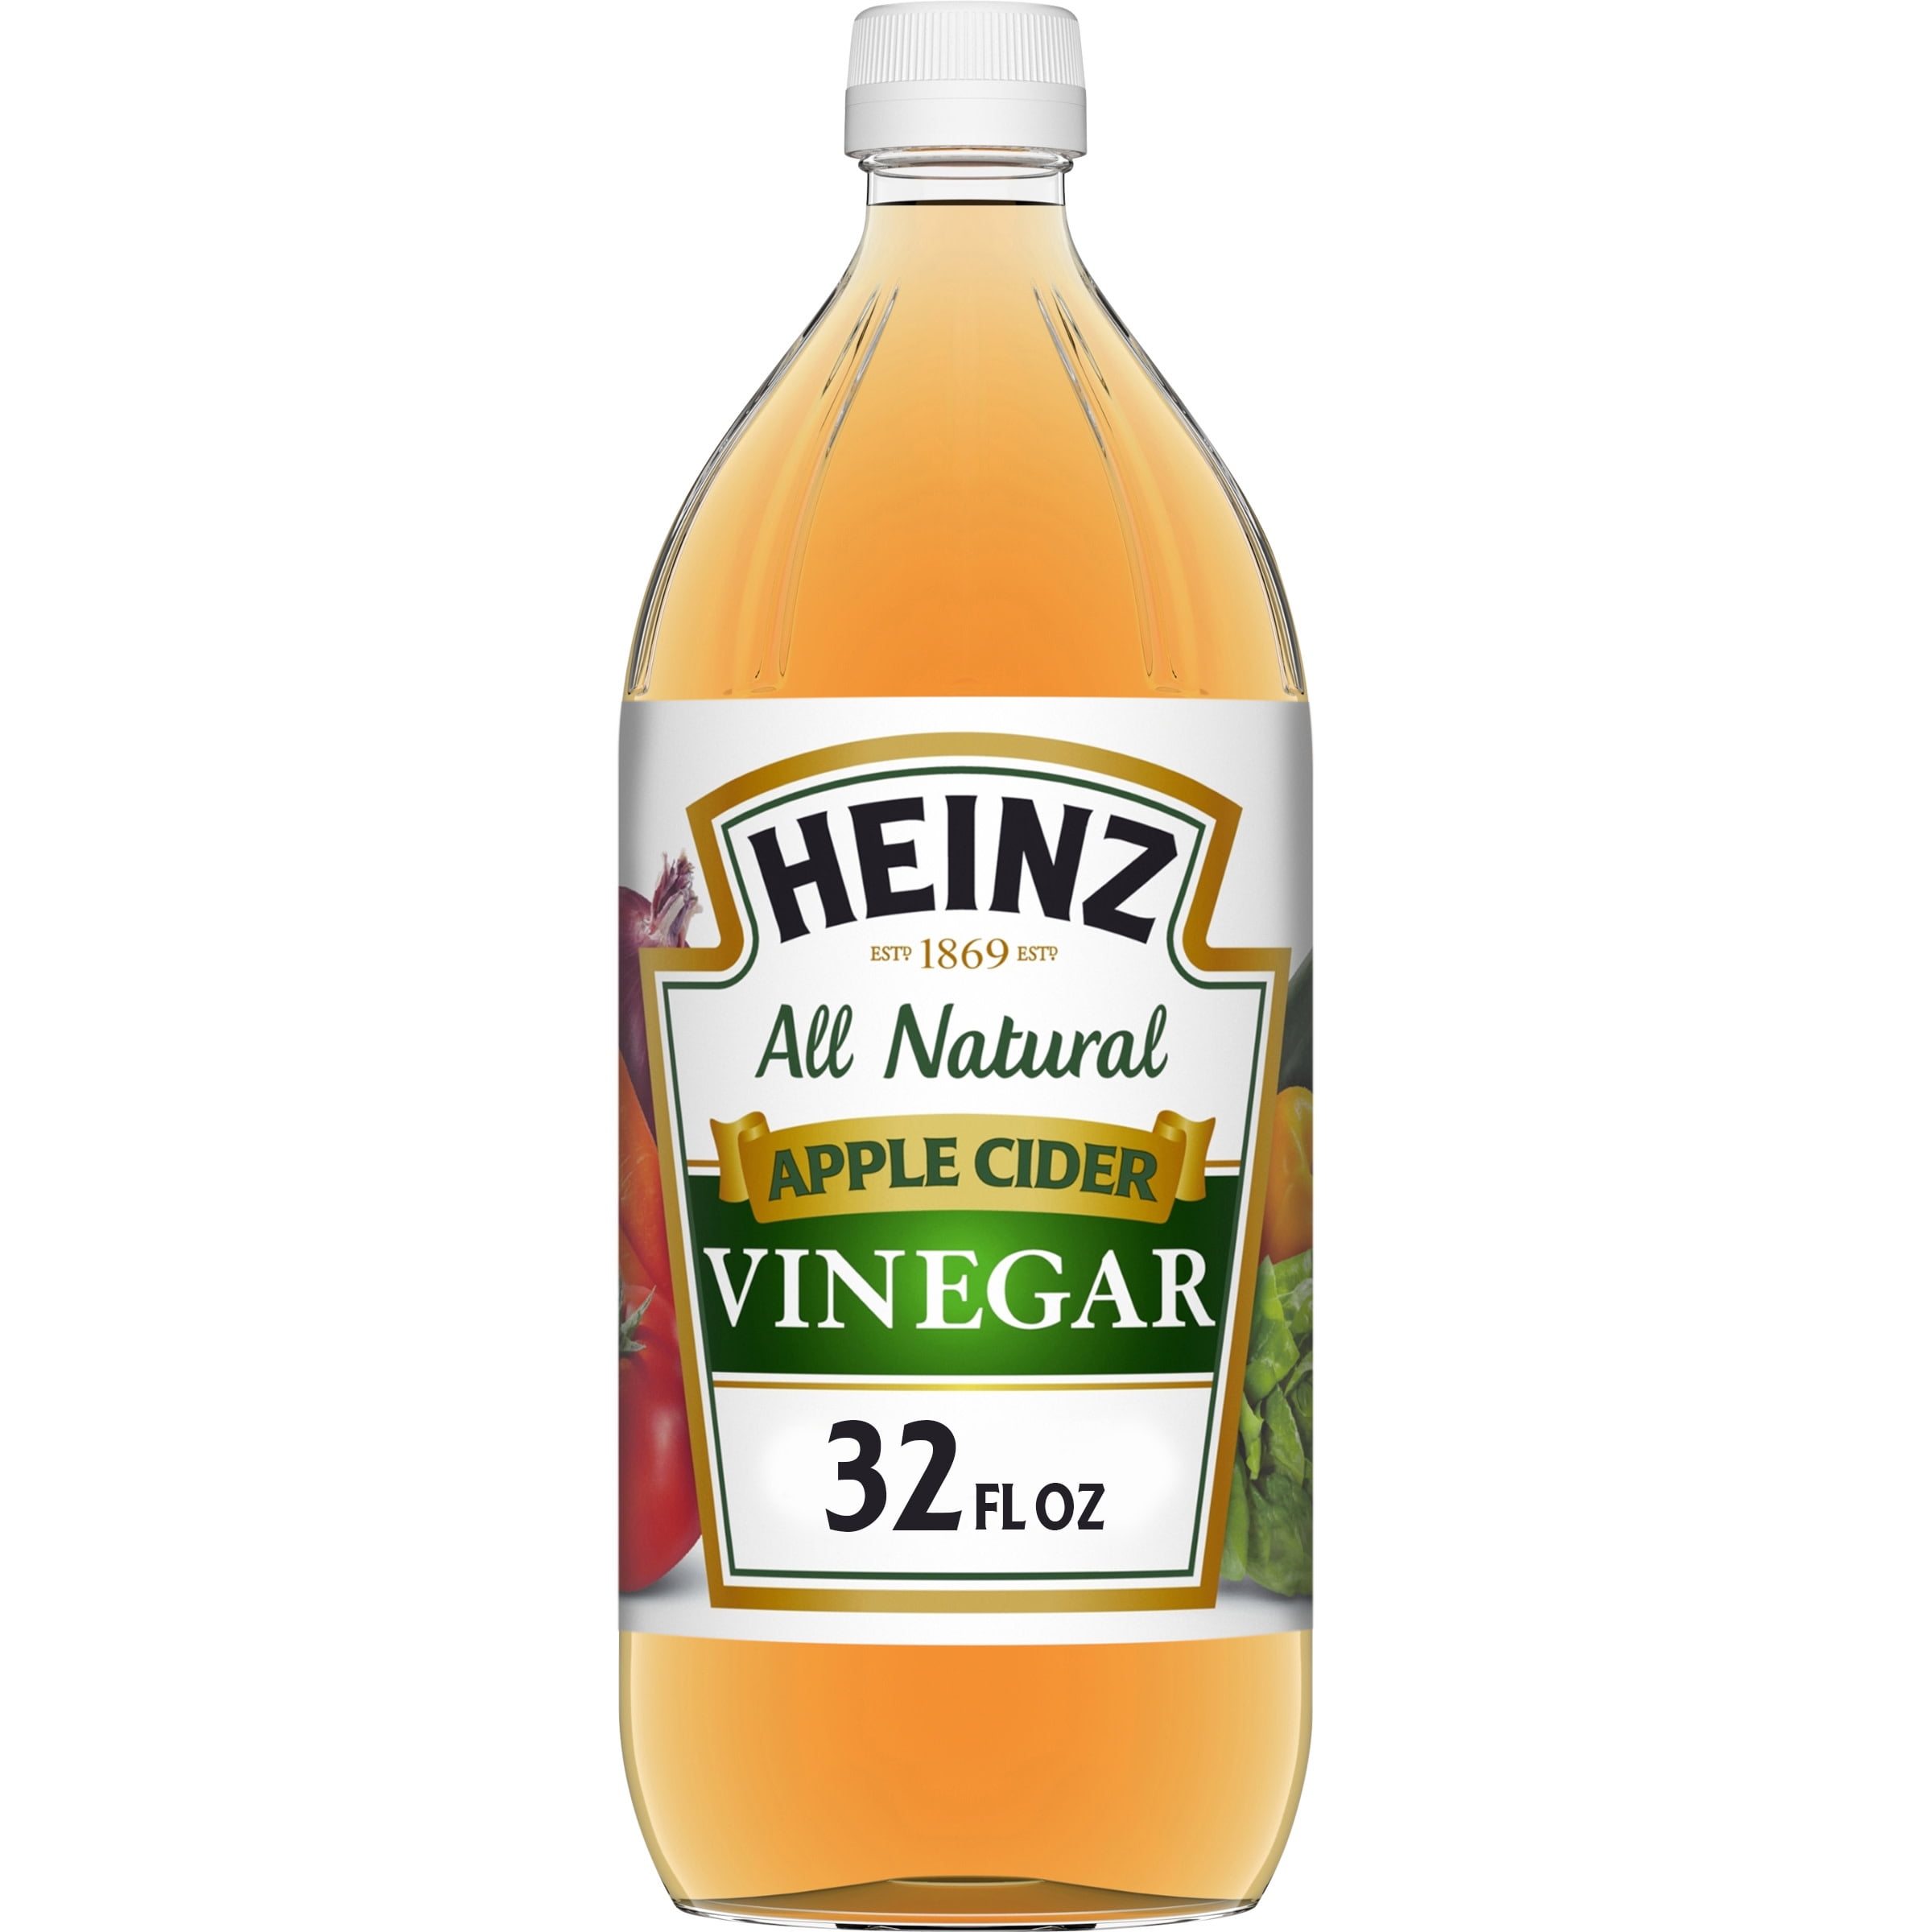 Heinz All Natural Apple Cider Vinegar with 5% Acidity , 32 fl oz Bottle